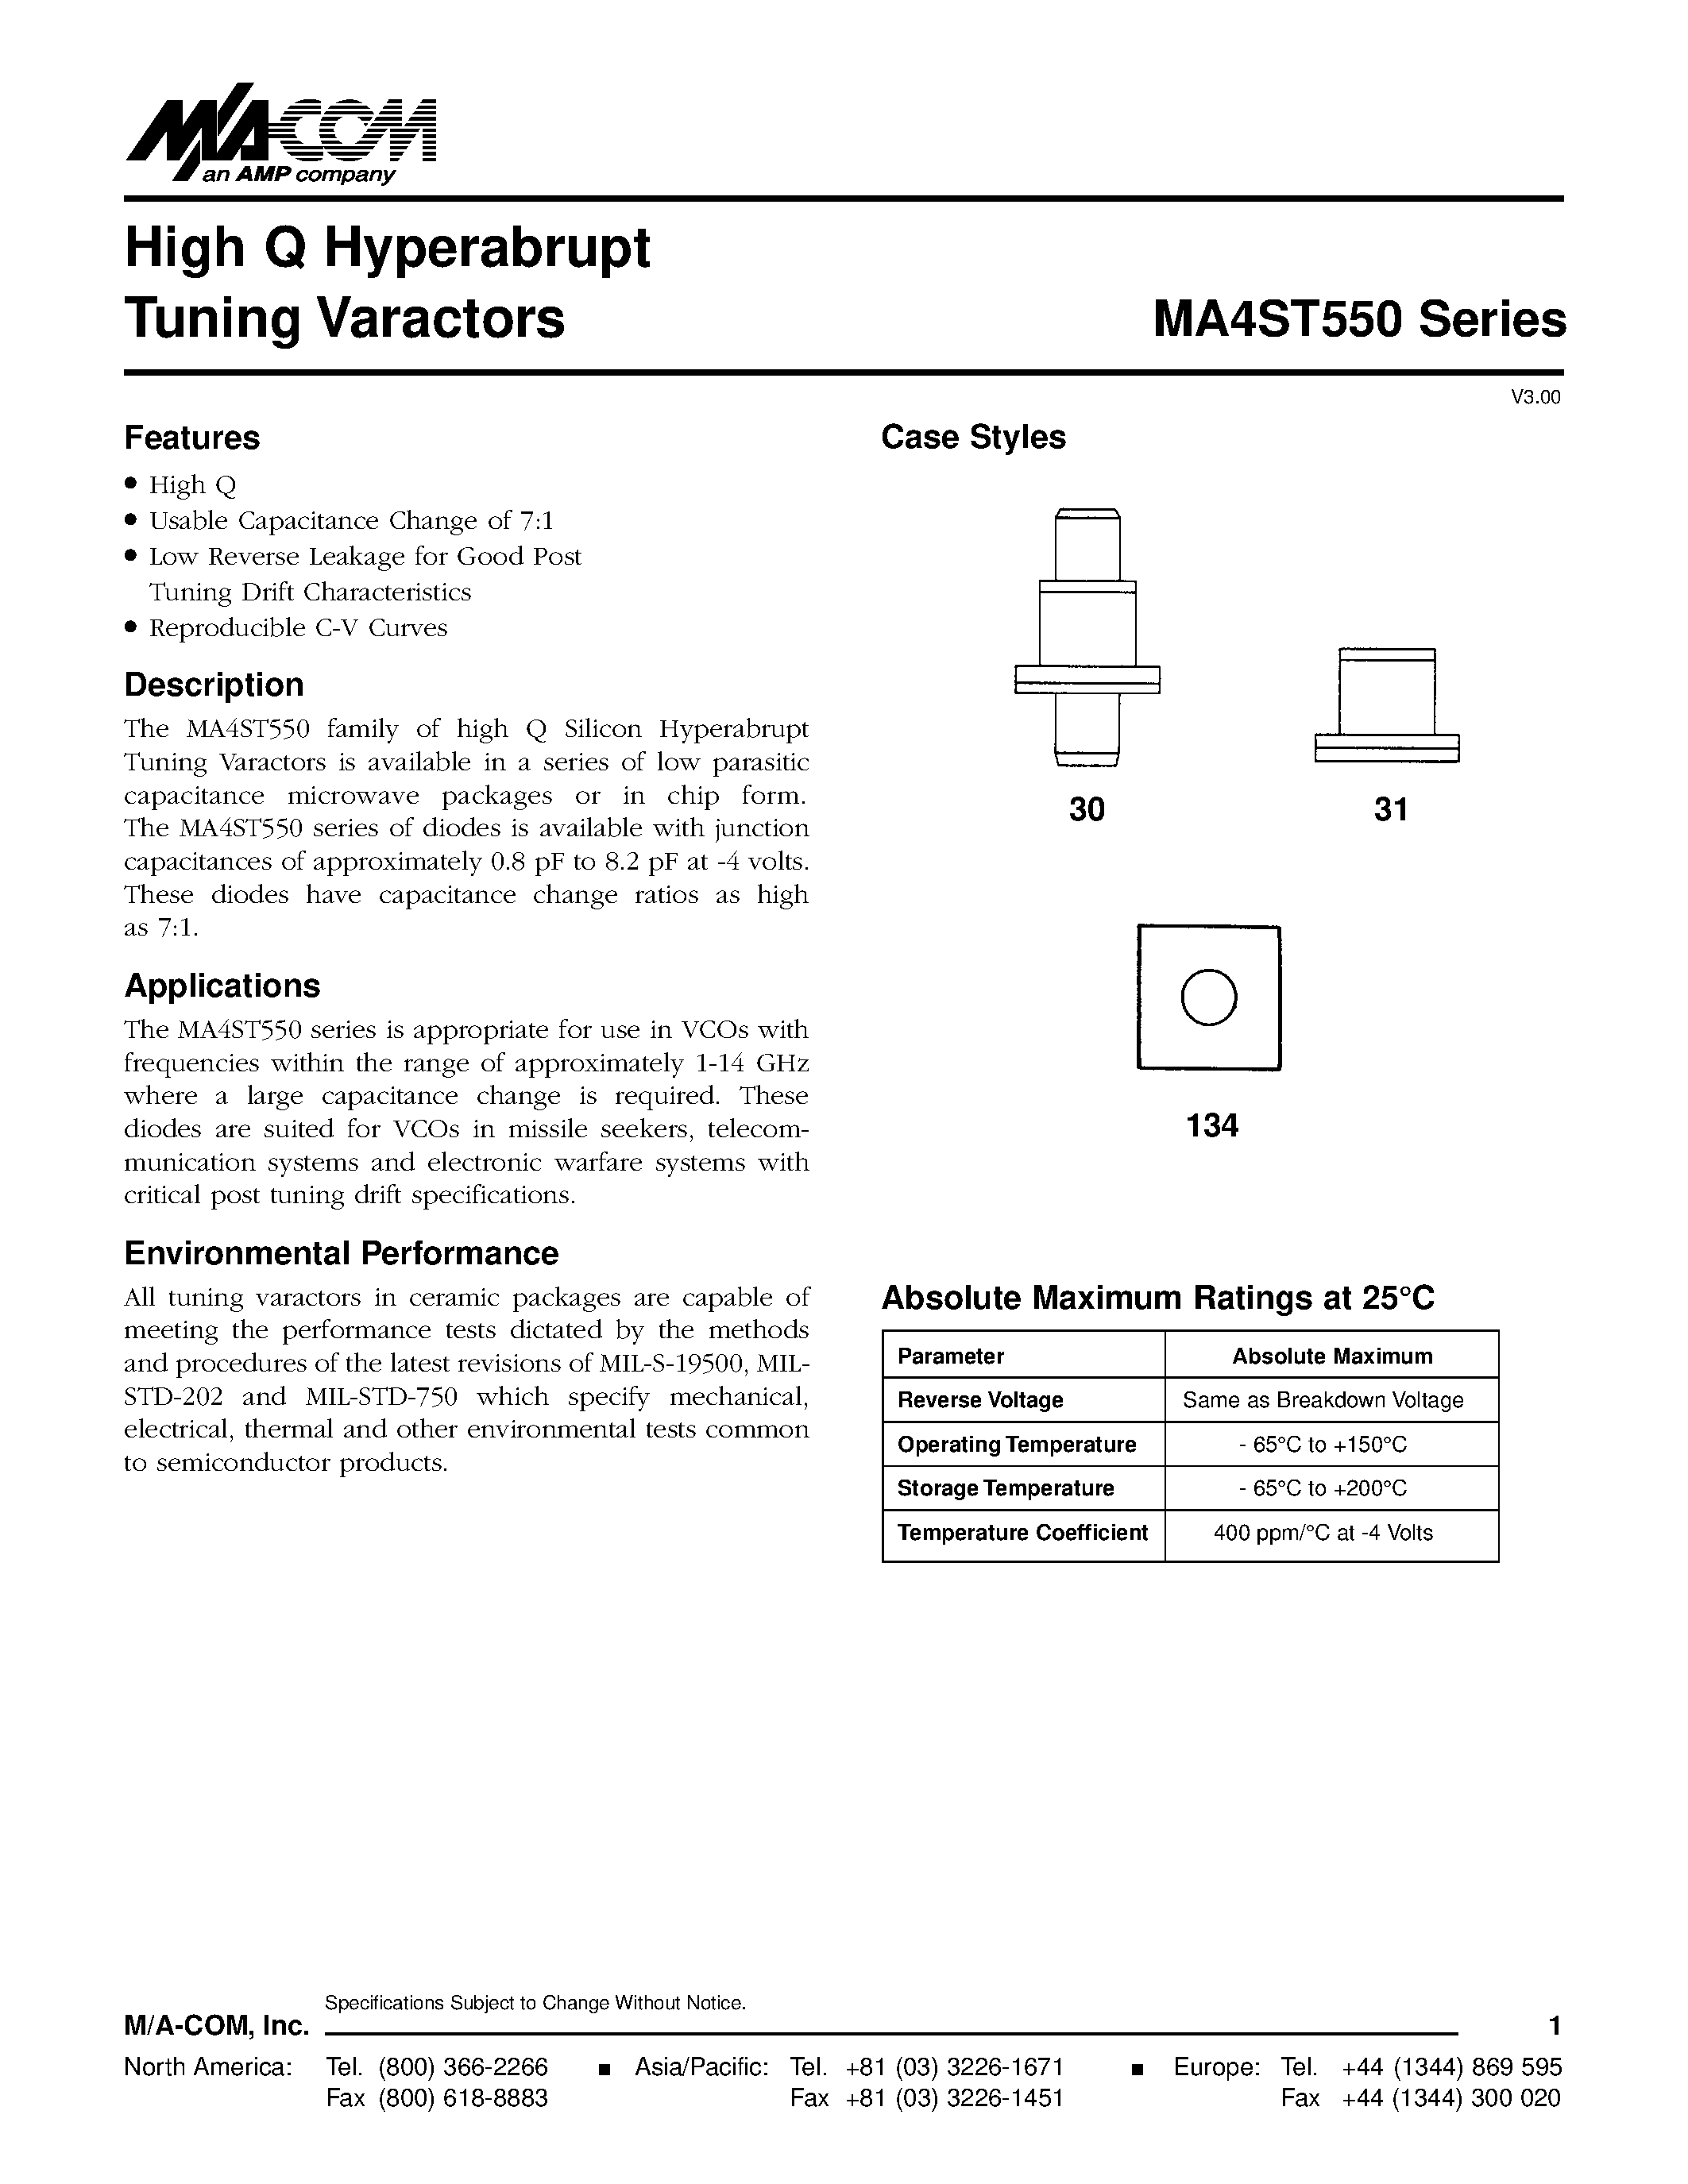 Даташит MA4ST562 - High Q Hyperabrupt Tuning Varactors страница 1